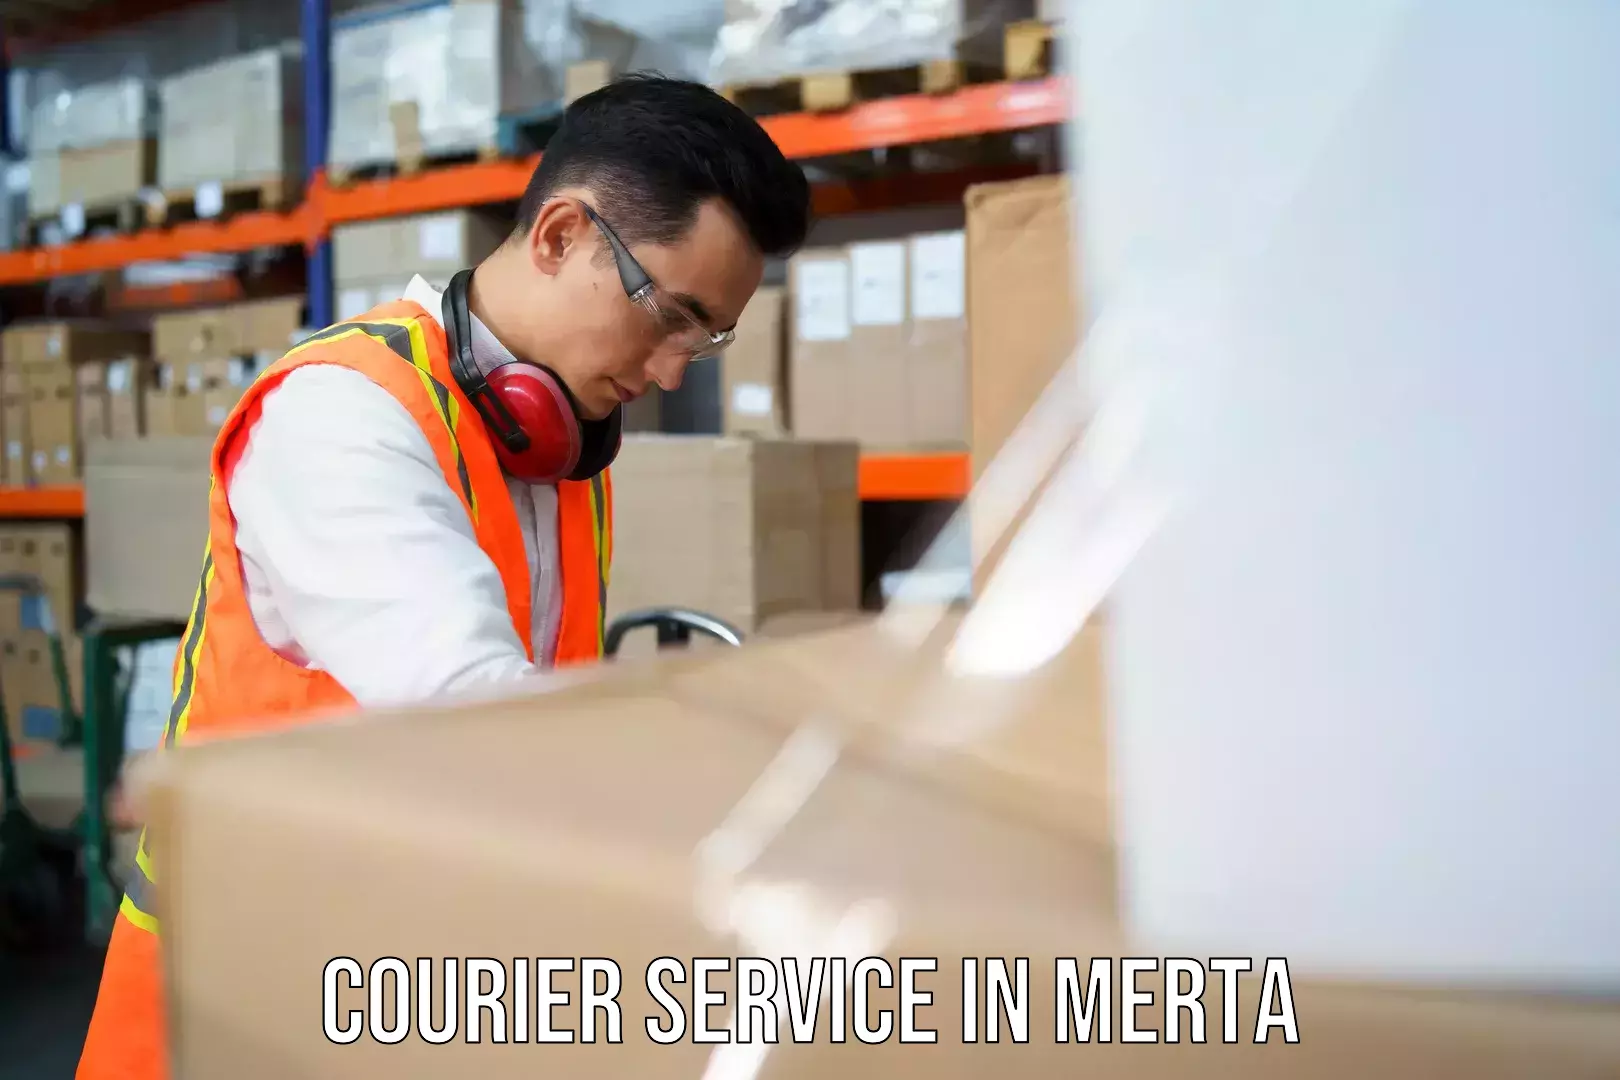 Doorstep delivery service in Merta